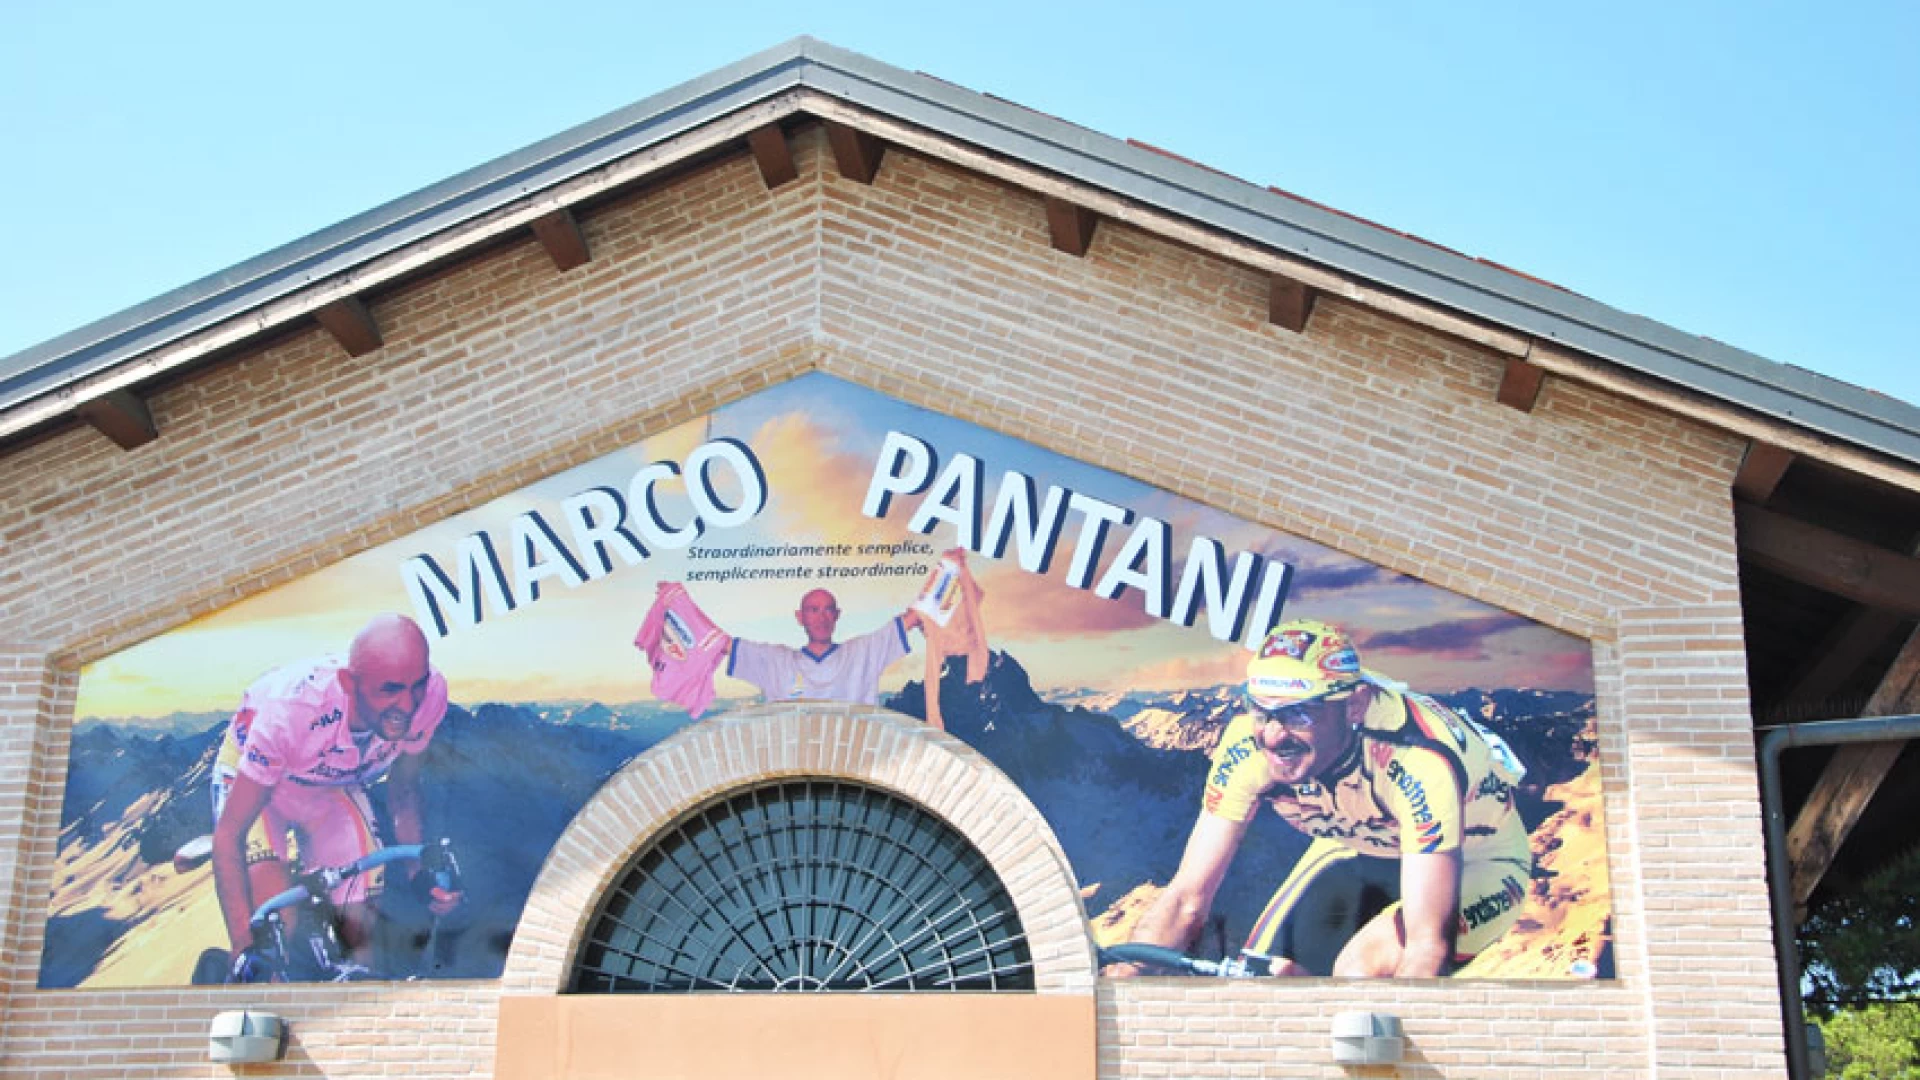 A tredici anni dalla morte di Marco Pantani, la nostra redazione vuole ricordarlo cosi.